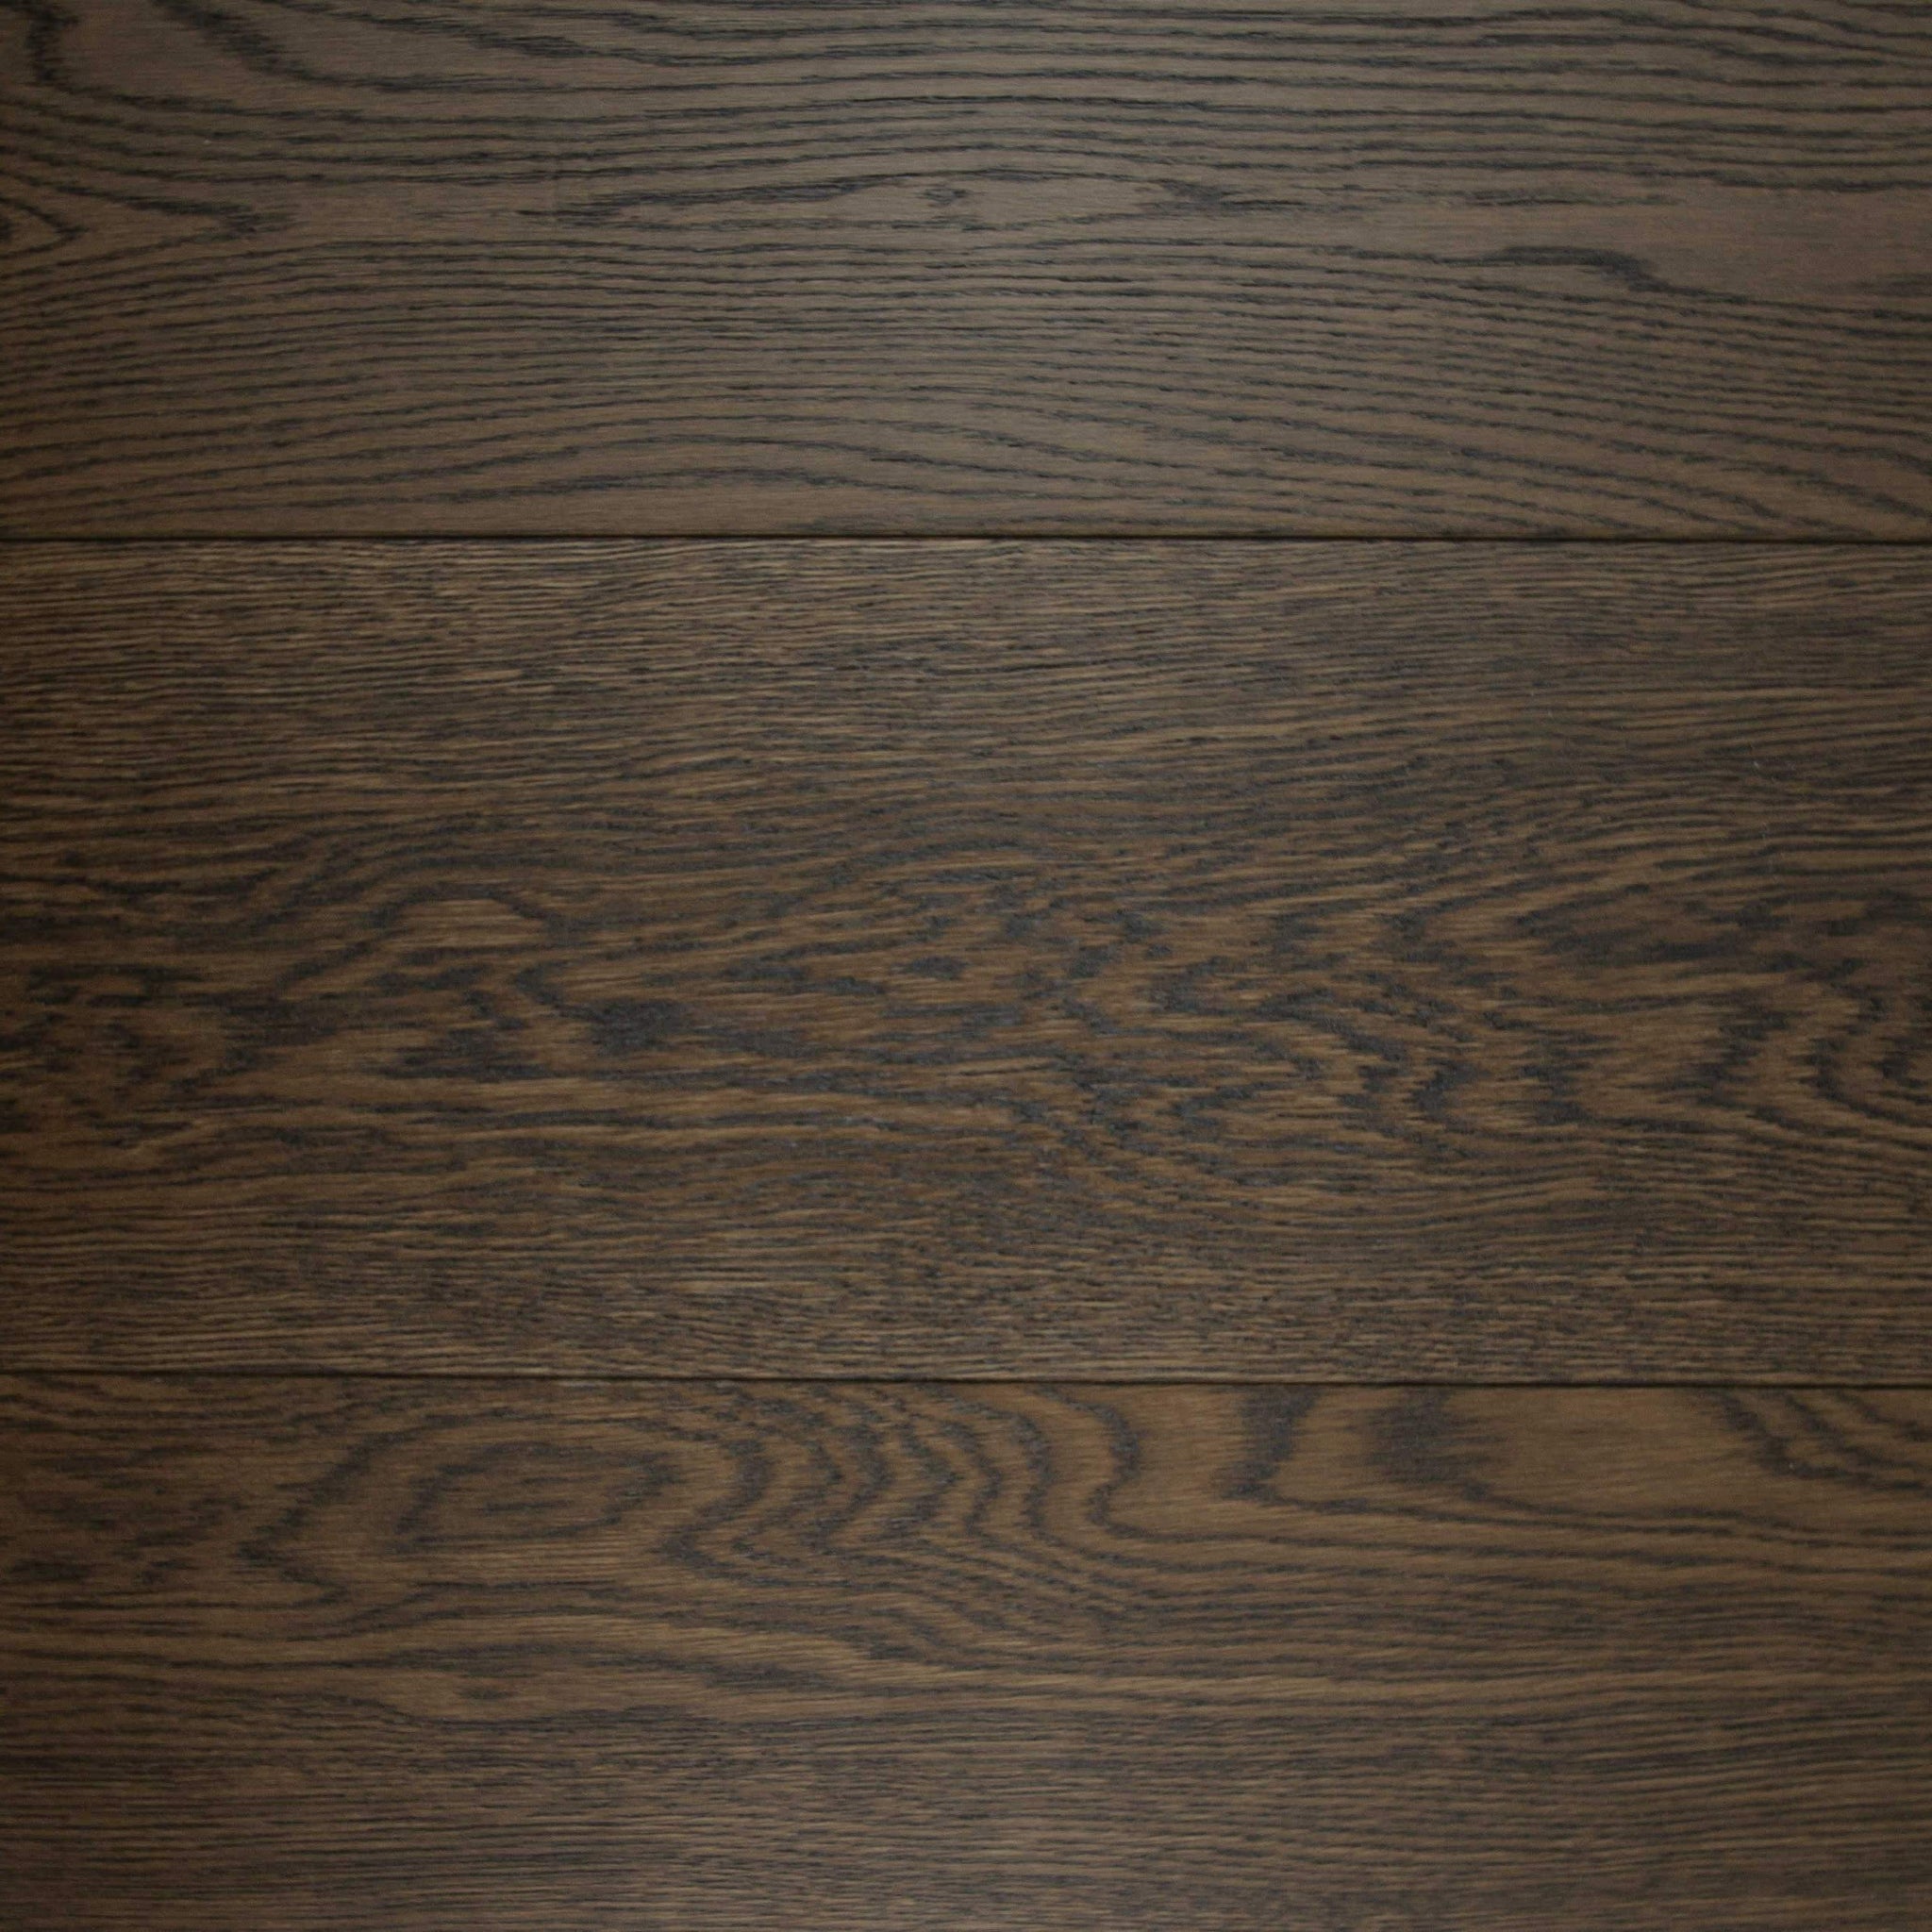 E344ln Brushed Heritage Oak Flooring Uv Oiled Finish